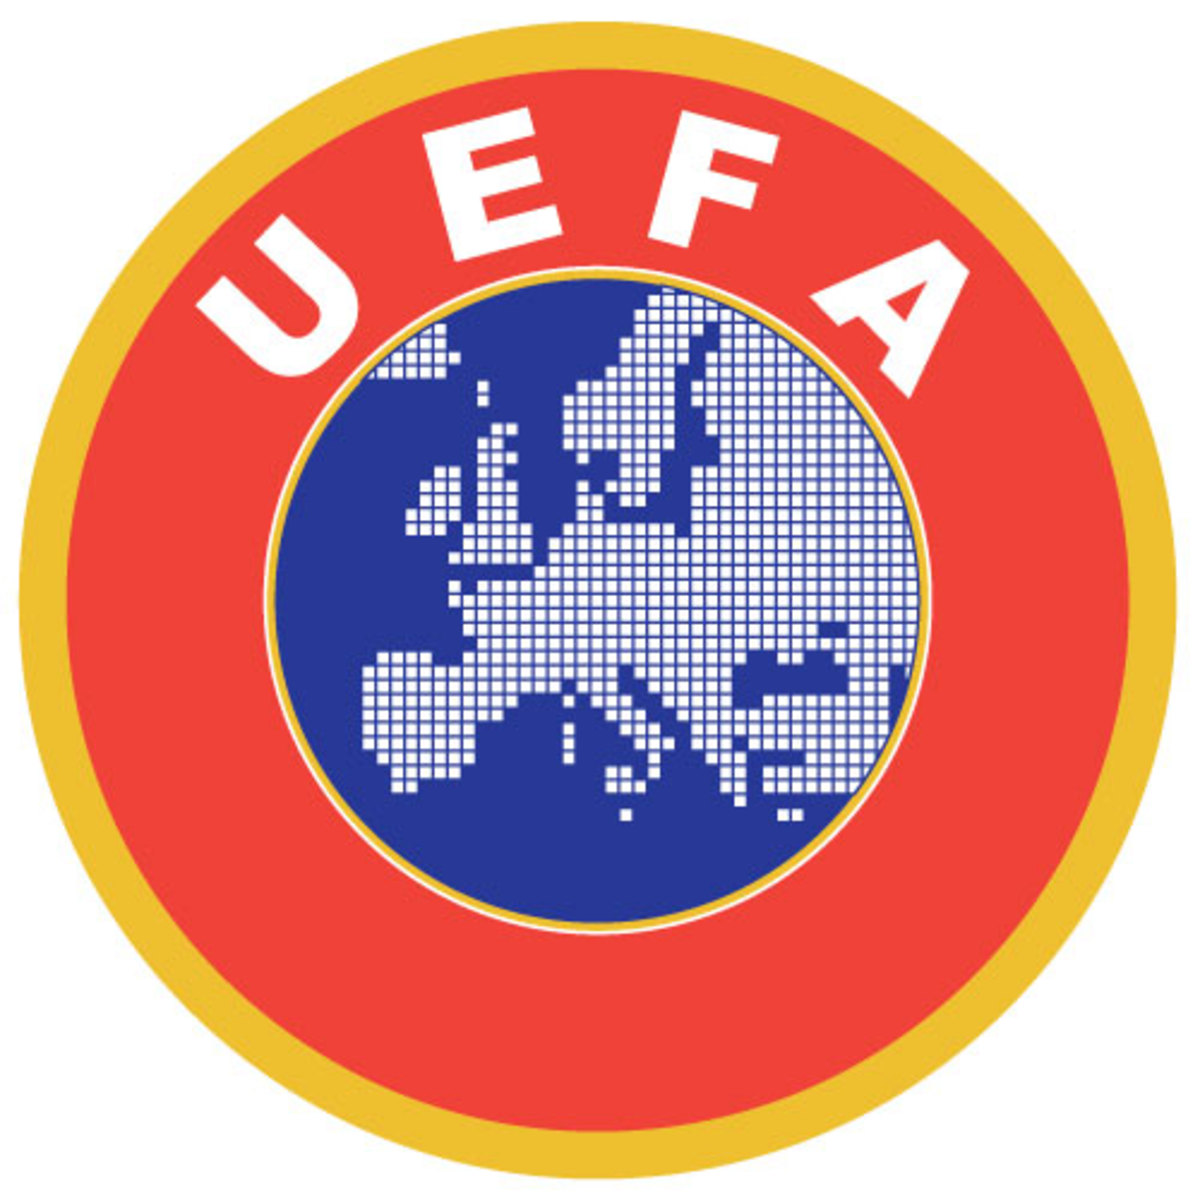 12η στην UEFA η Ελλάδα